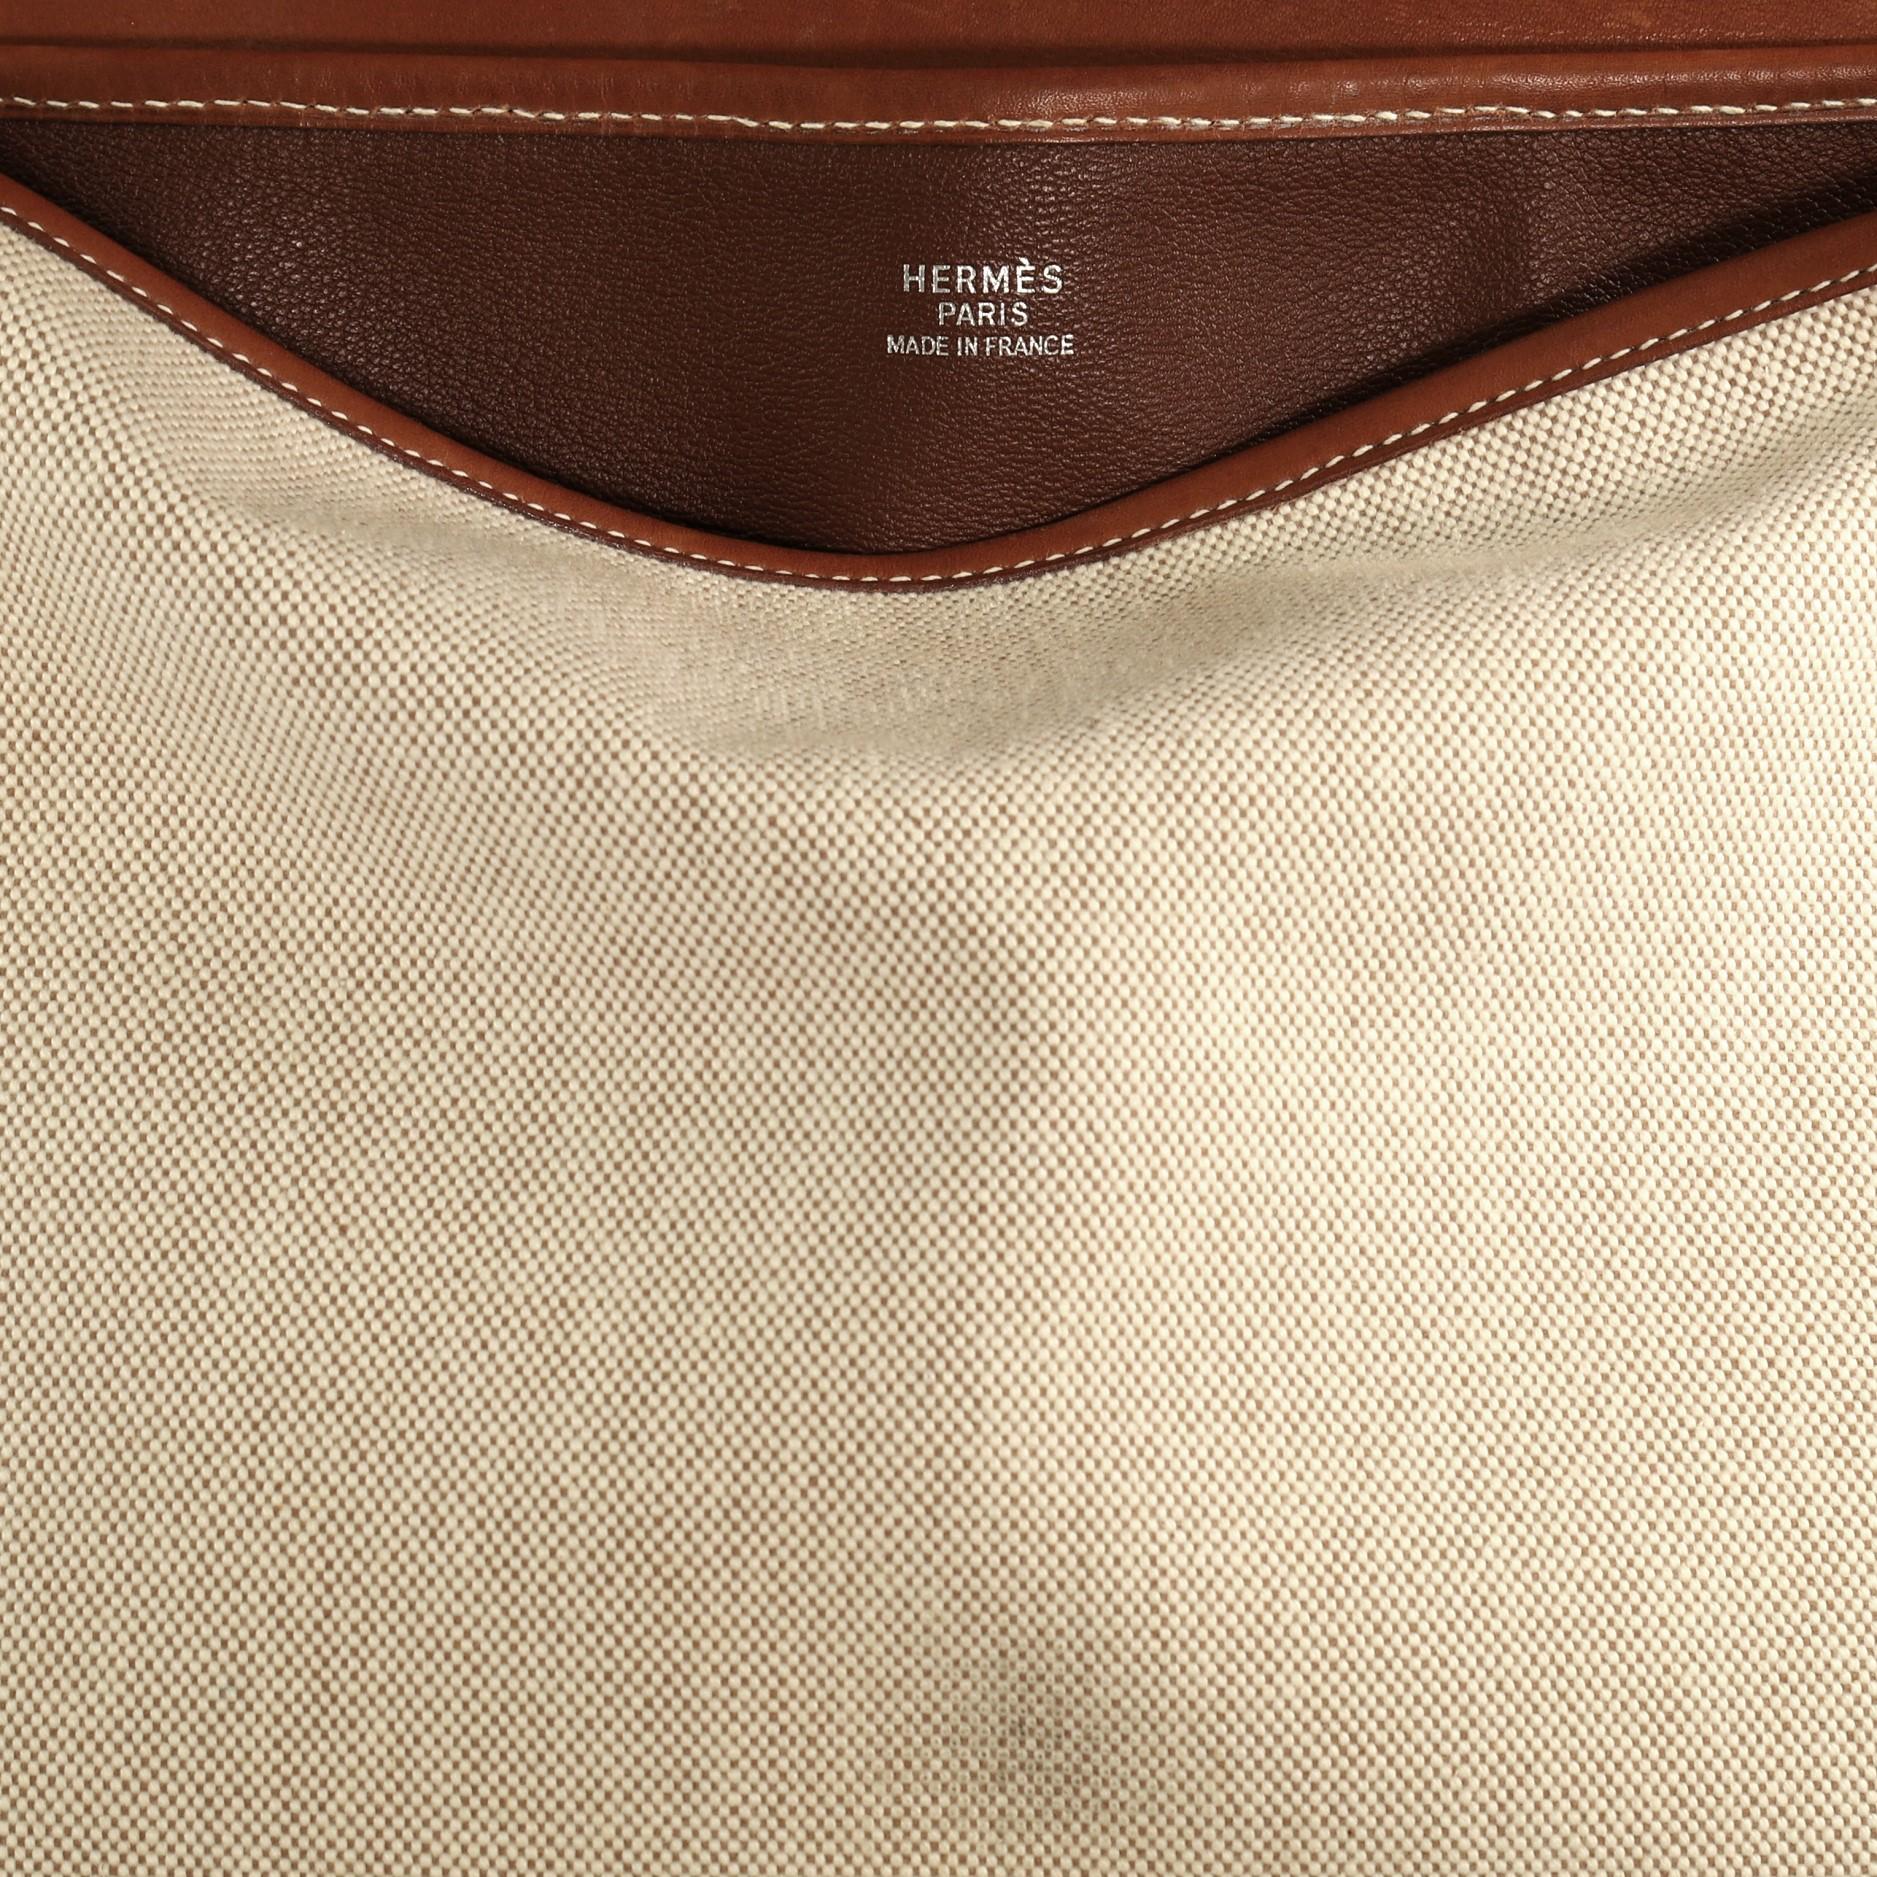 Hermes Christine Handbag Toile and Leather 2